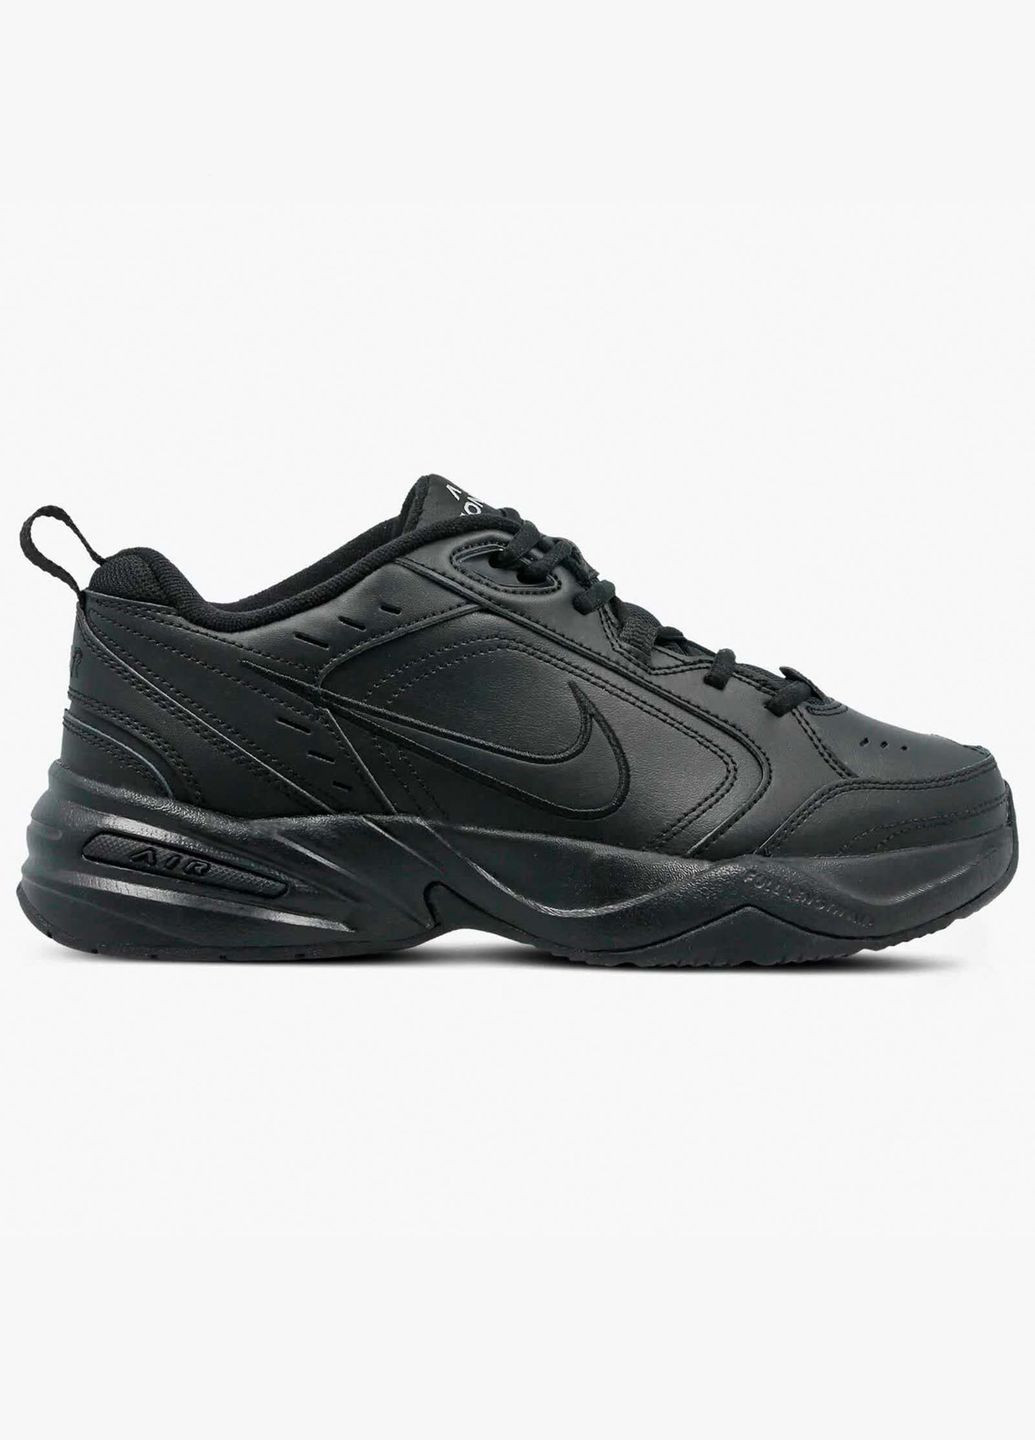 Черные всесезонные мужские кроссовки air monarch iv 415445-001 весна-осень кожа текстиль черные Nike